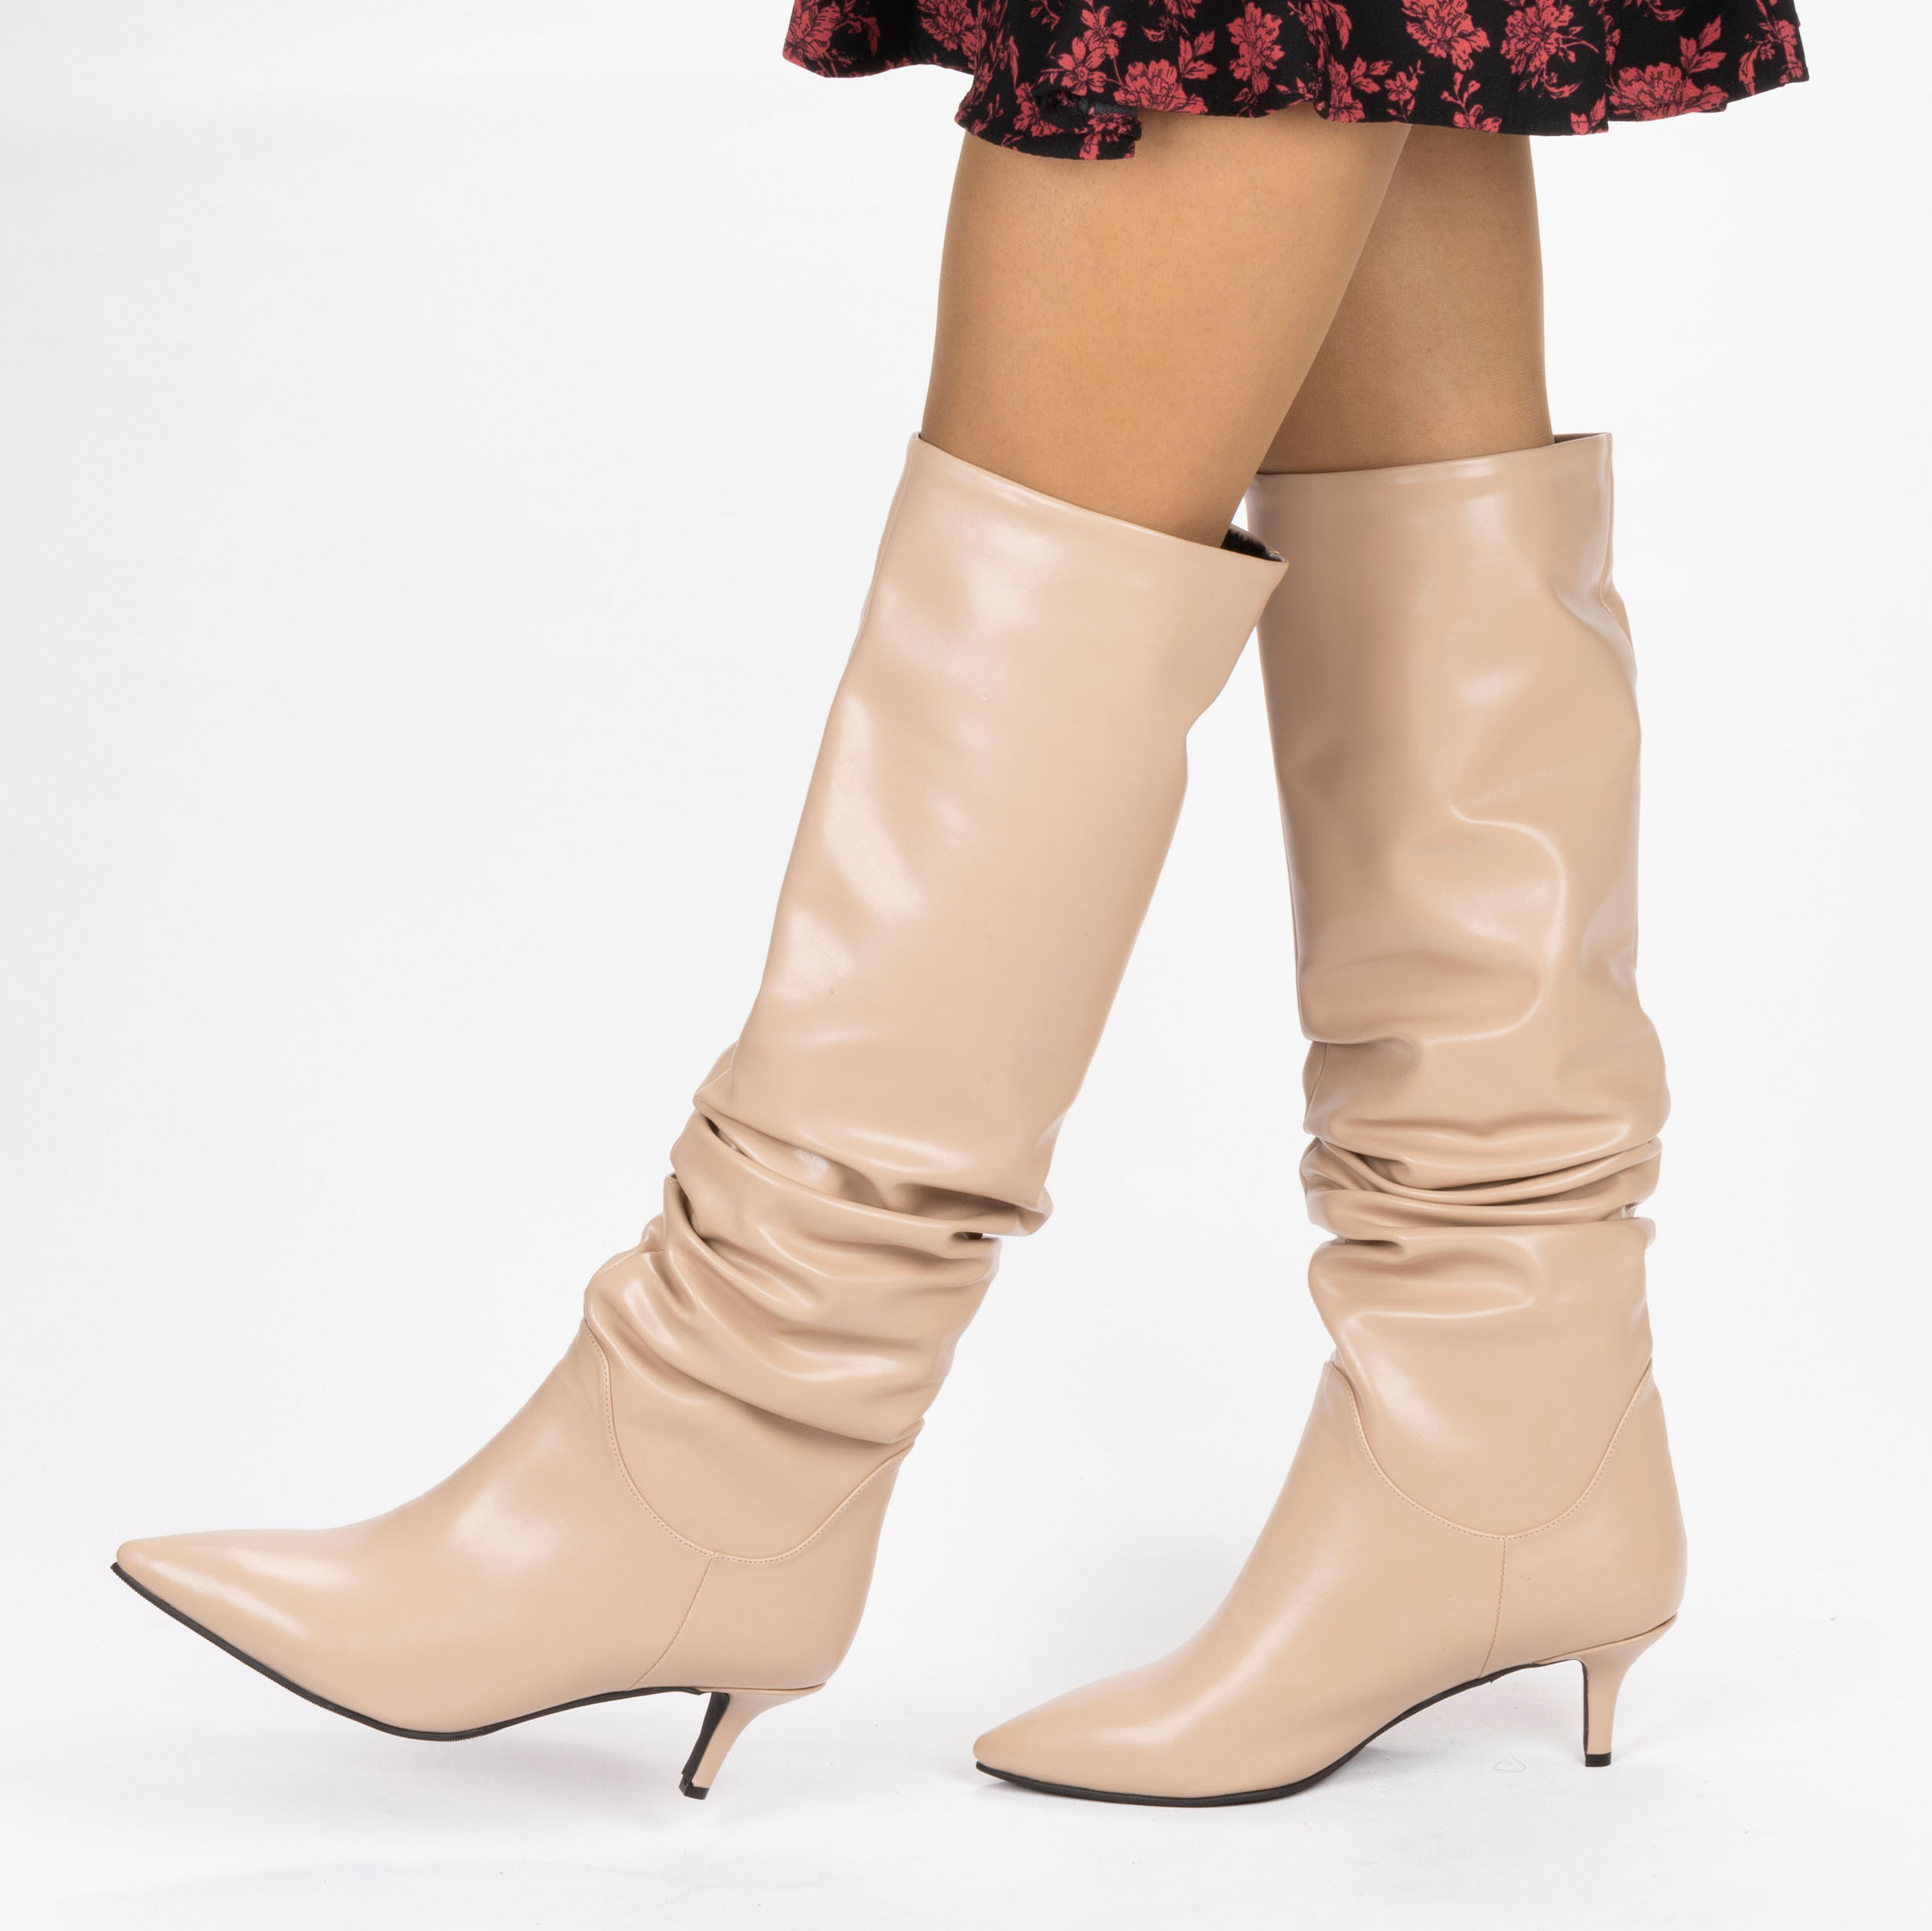 Kadın Kısa Topuklu Sivri Burunlu Körüklü Çizme, Renk: Nude - Cilt, Beden: 36